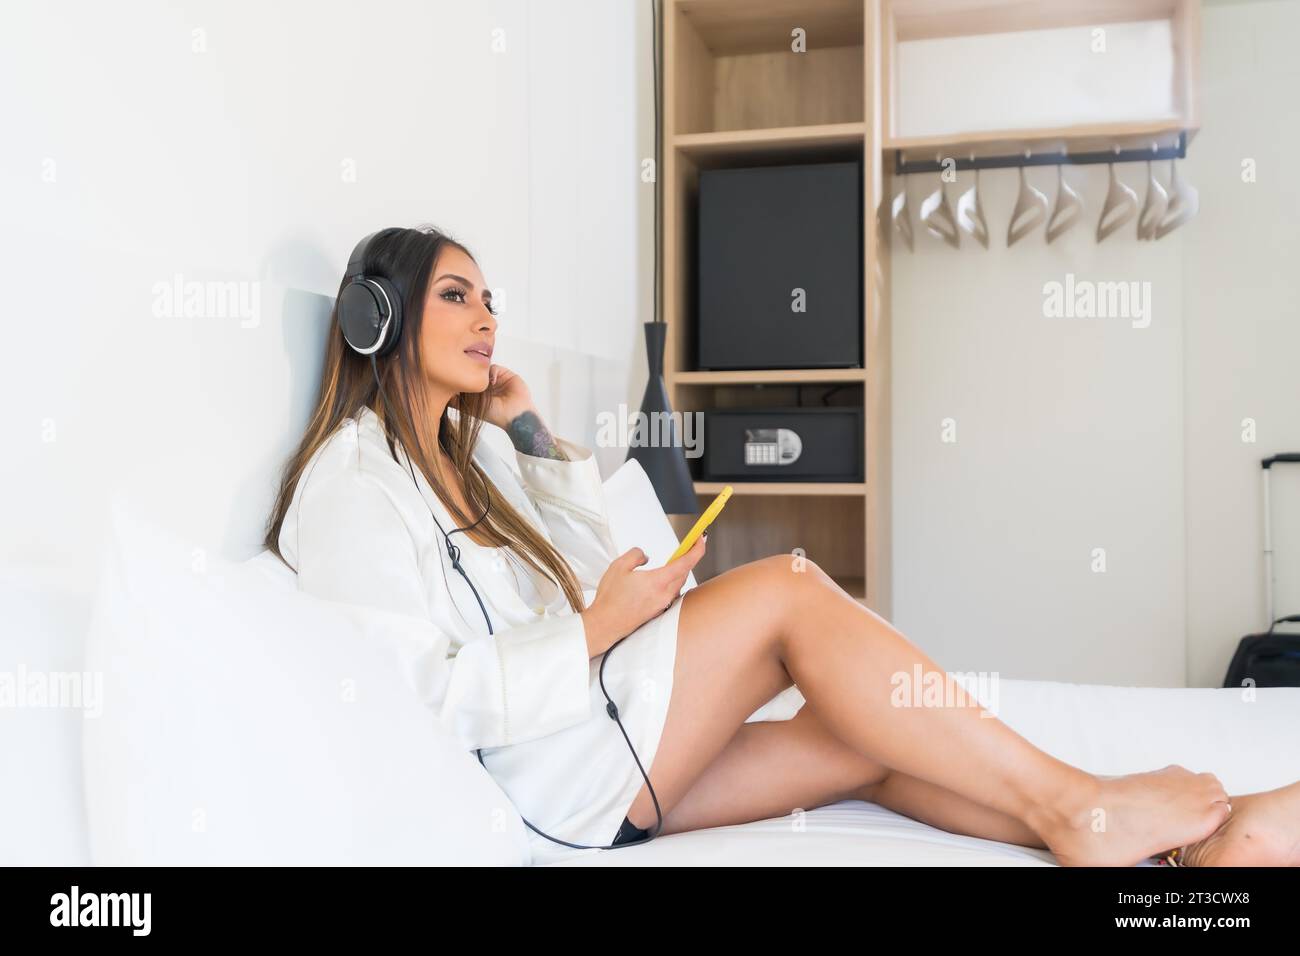 Schönheitsfrau in bequemer Kleidung, die Musik hört, die auf einem Hotelzimmer liegt Stockfoto